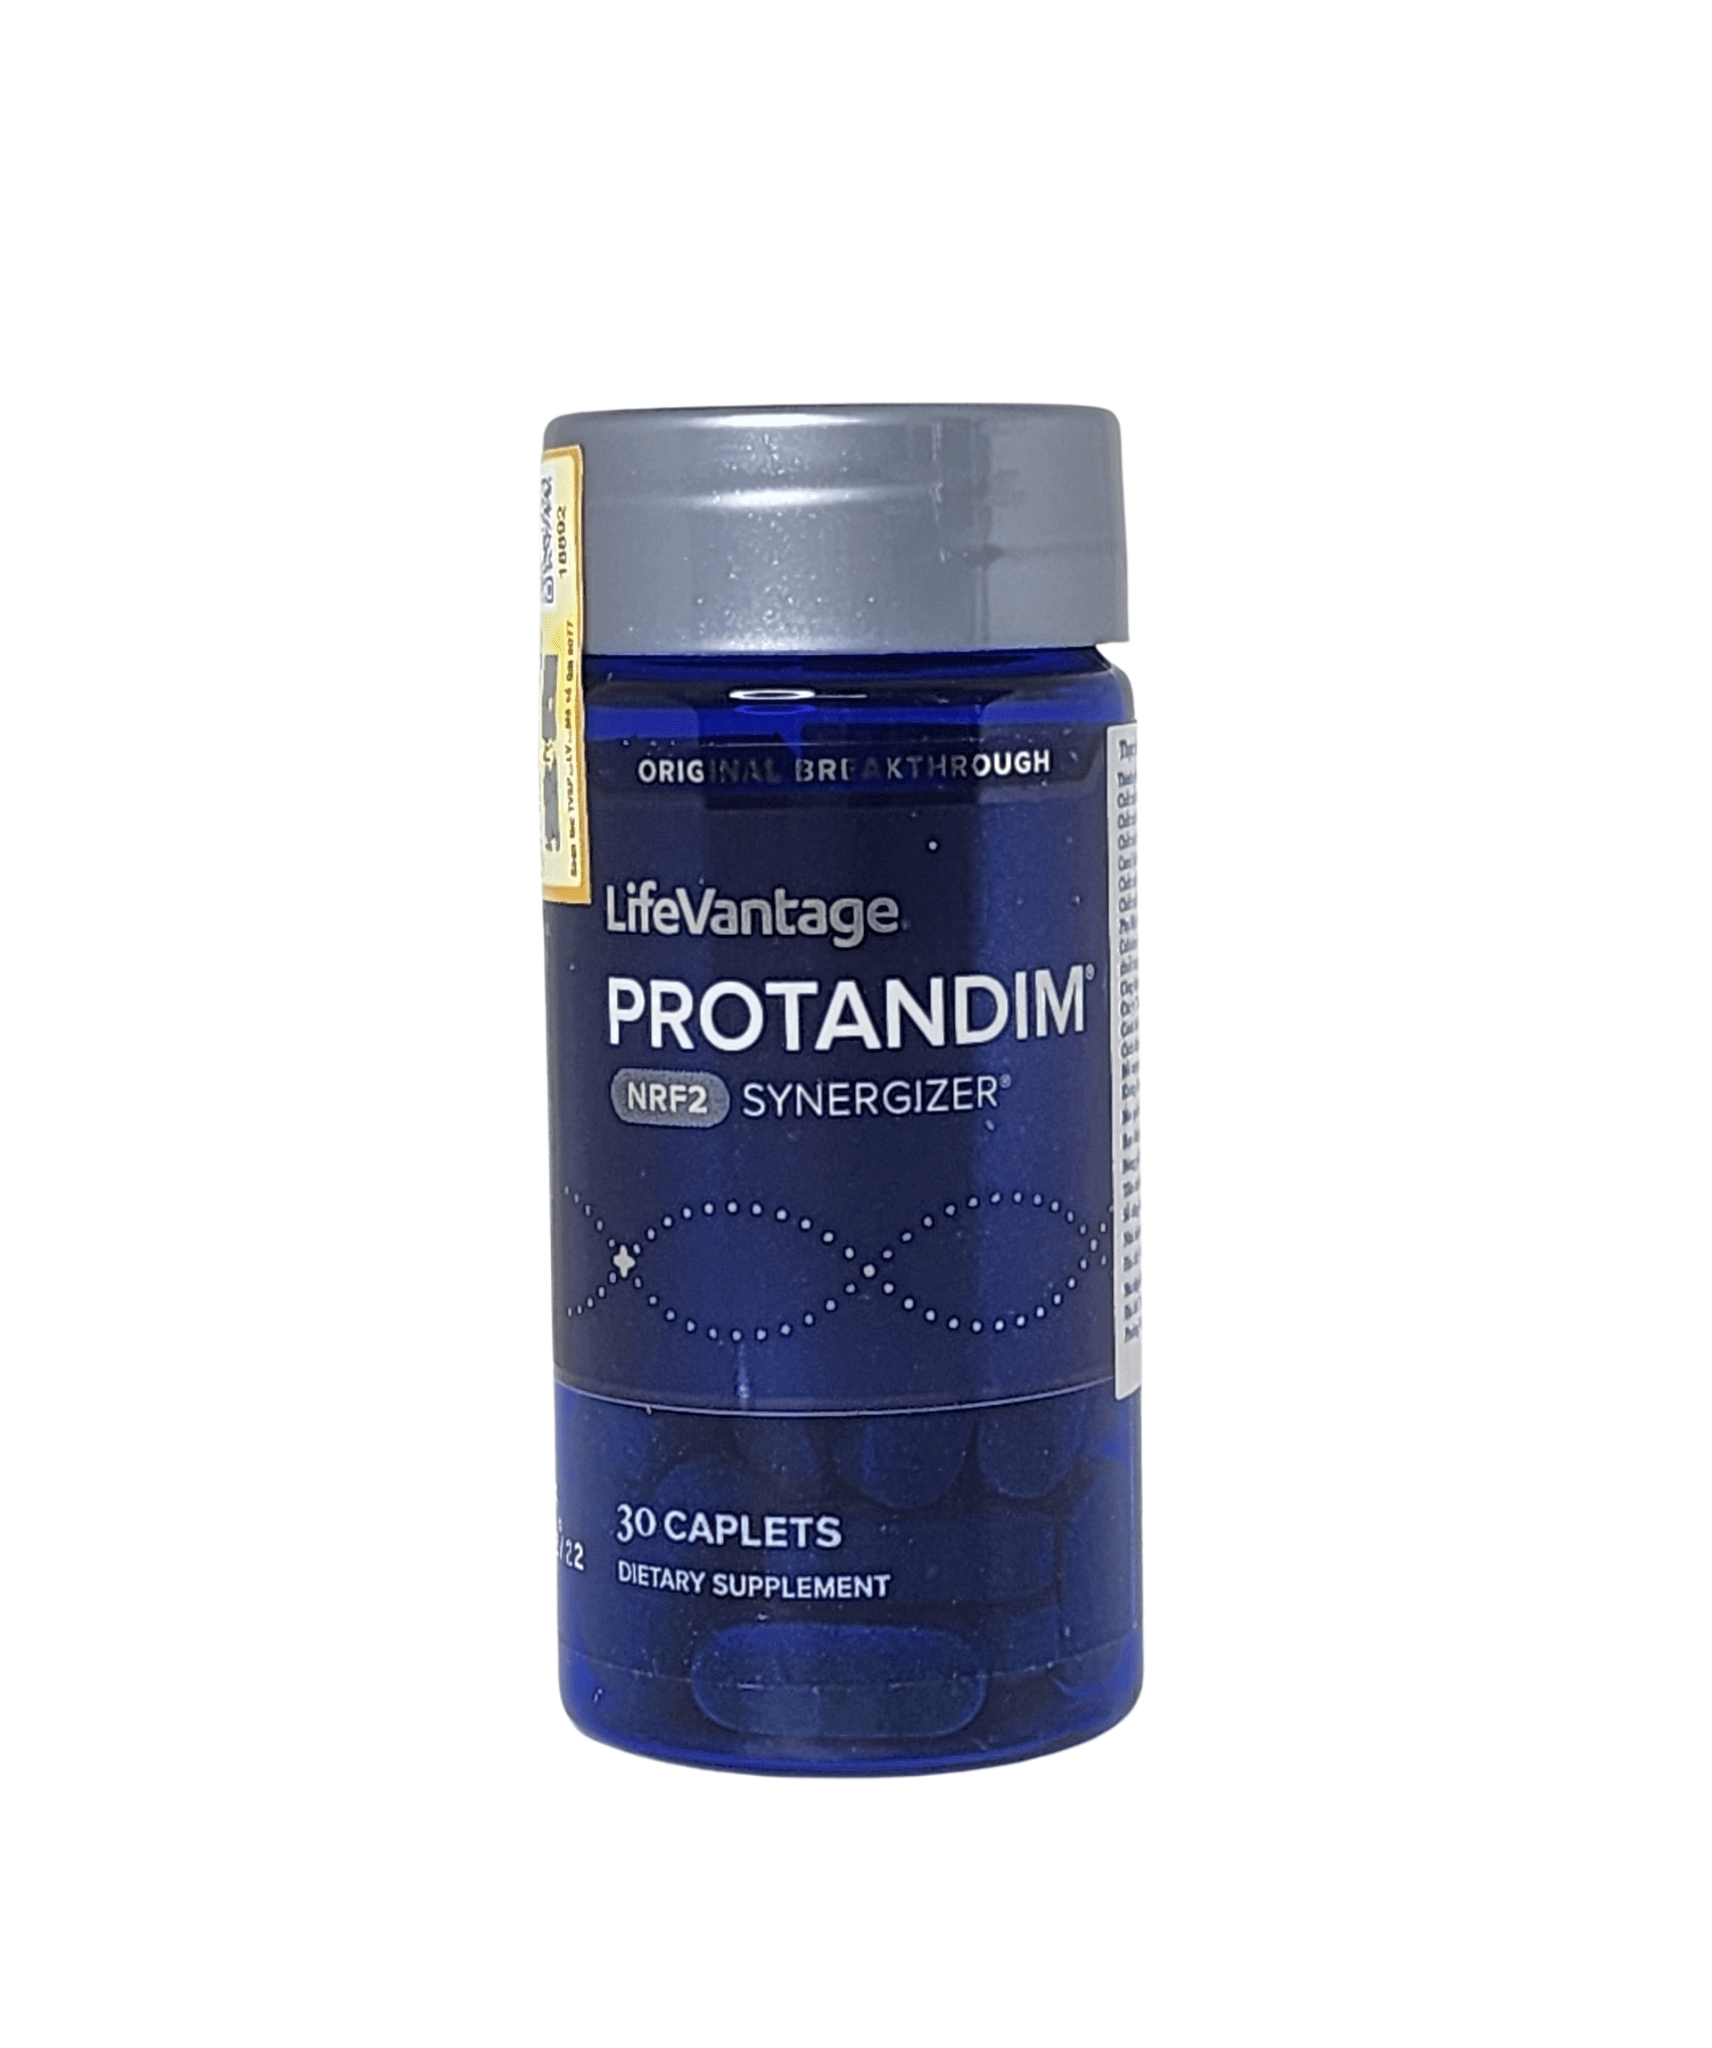 Viên uống Protandim LifeVantage có nguồn gốc từ Mỹ